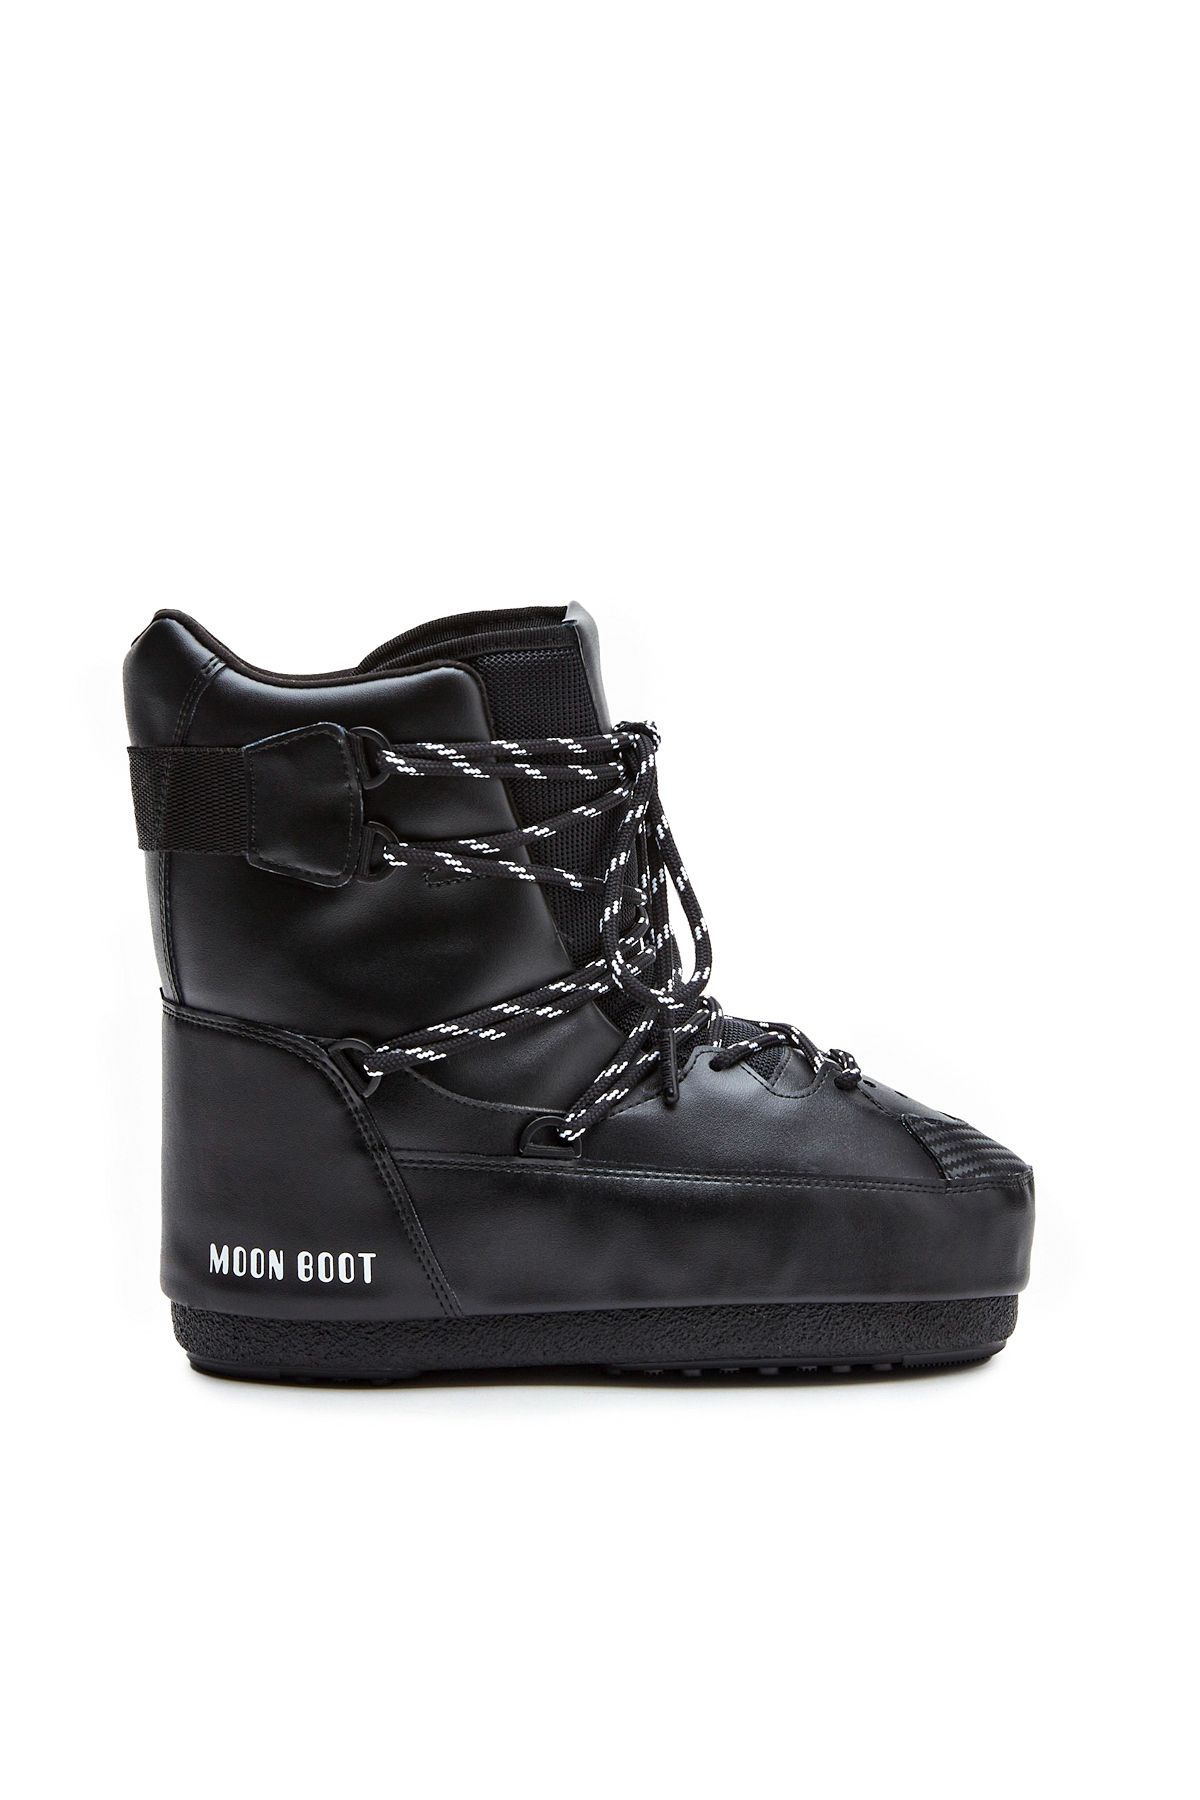 Moon Boot 14028200-001 Sneaker Mıd Black